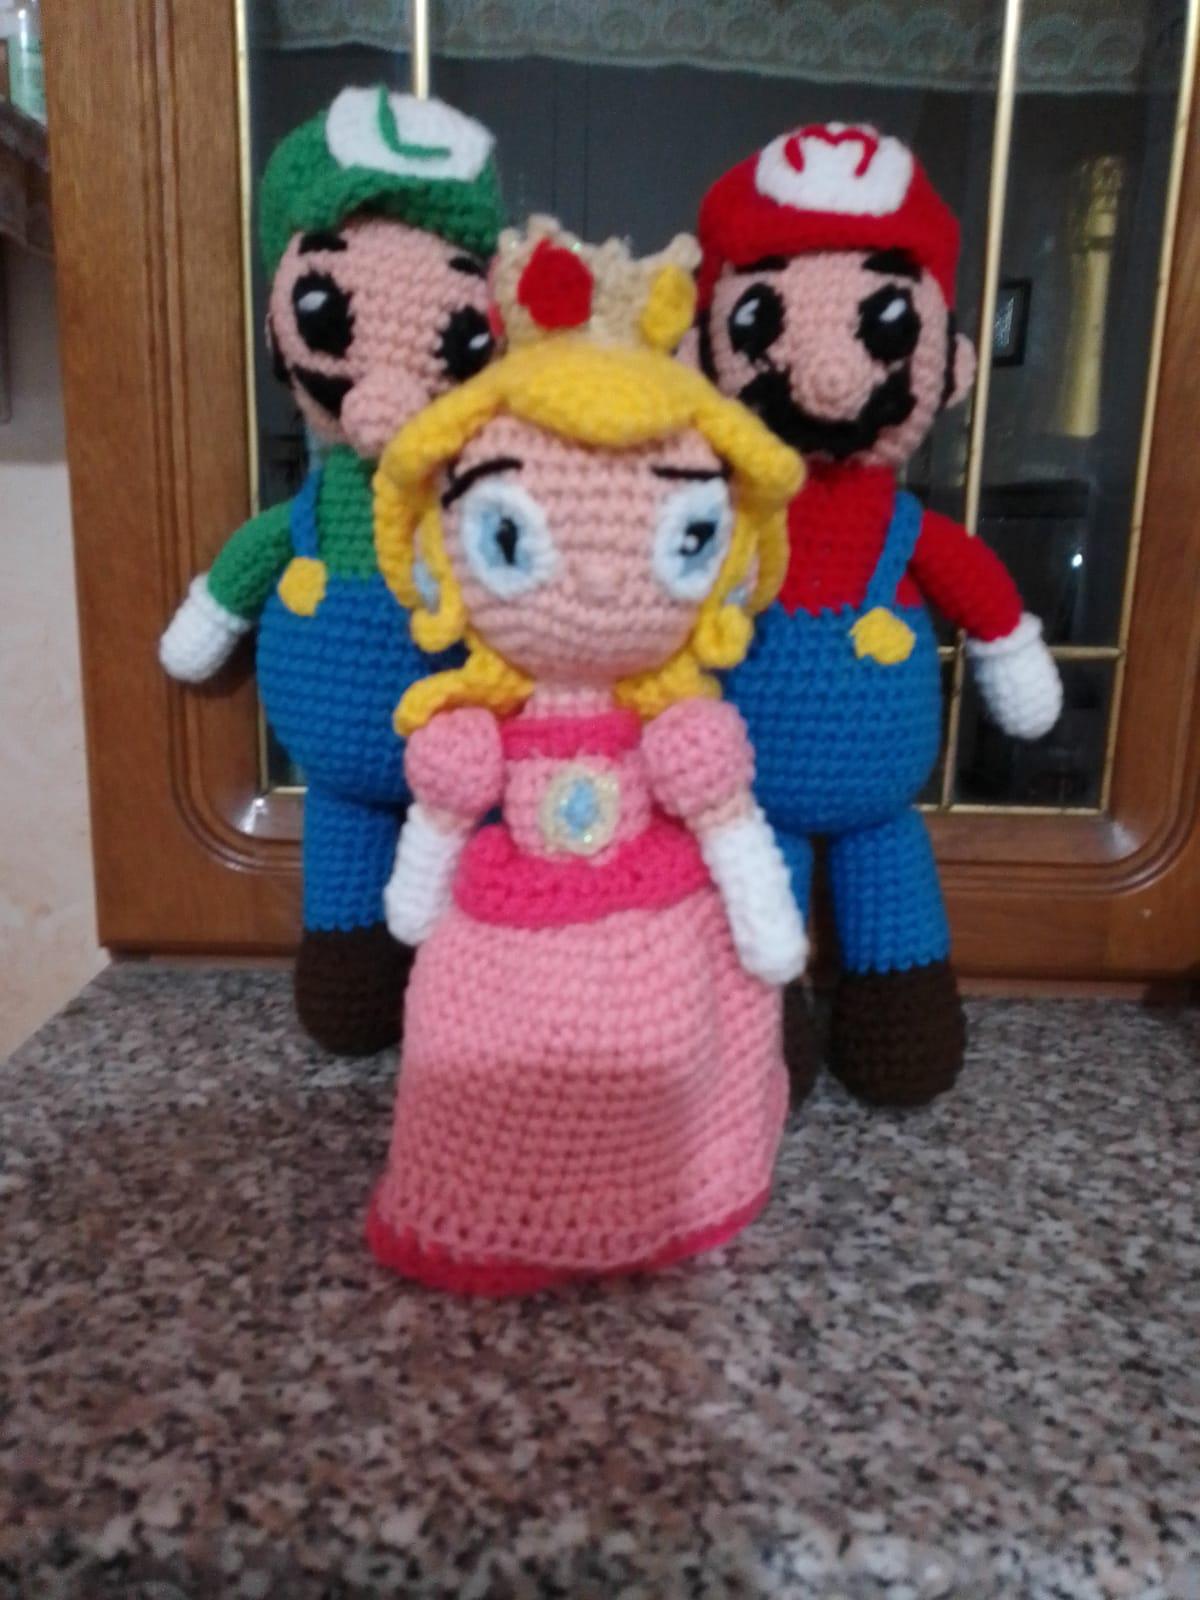 Mario & Luigi & Principessa Peach